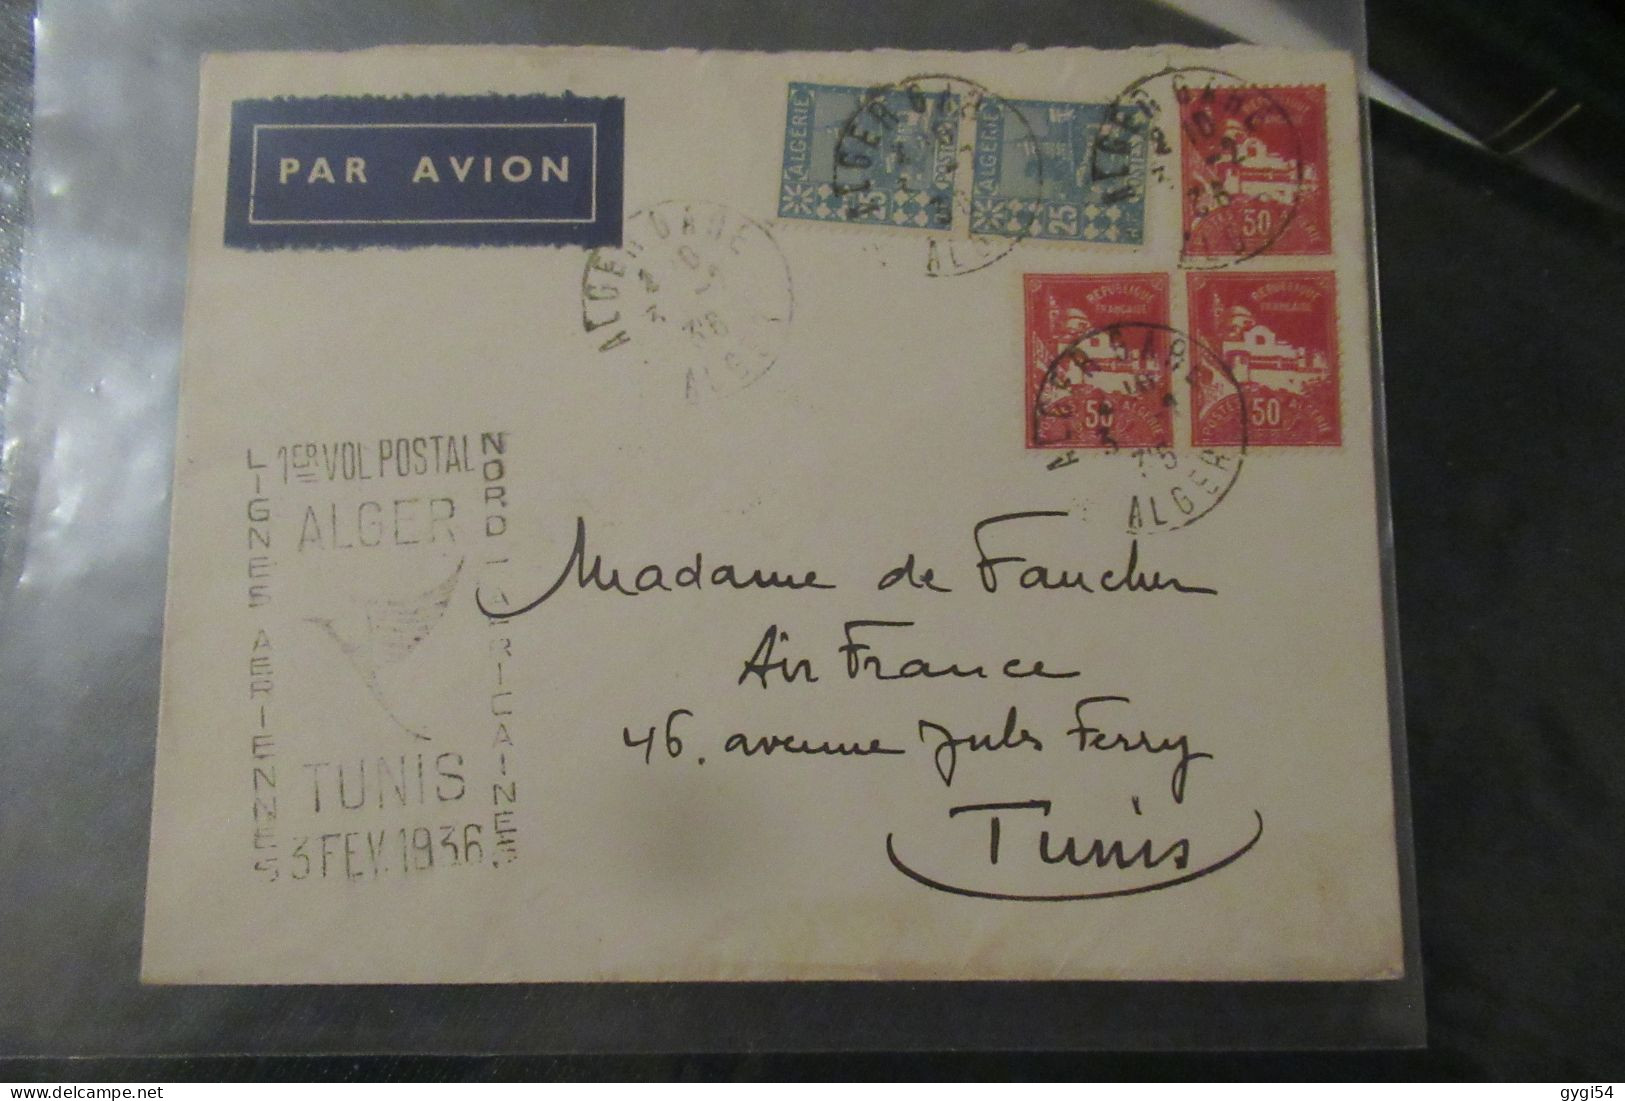 Algérie - 1er Vol Postal ALGER TUNIS 3 Février 1936 - Posta Aerea